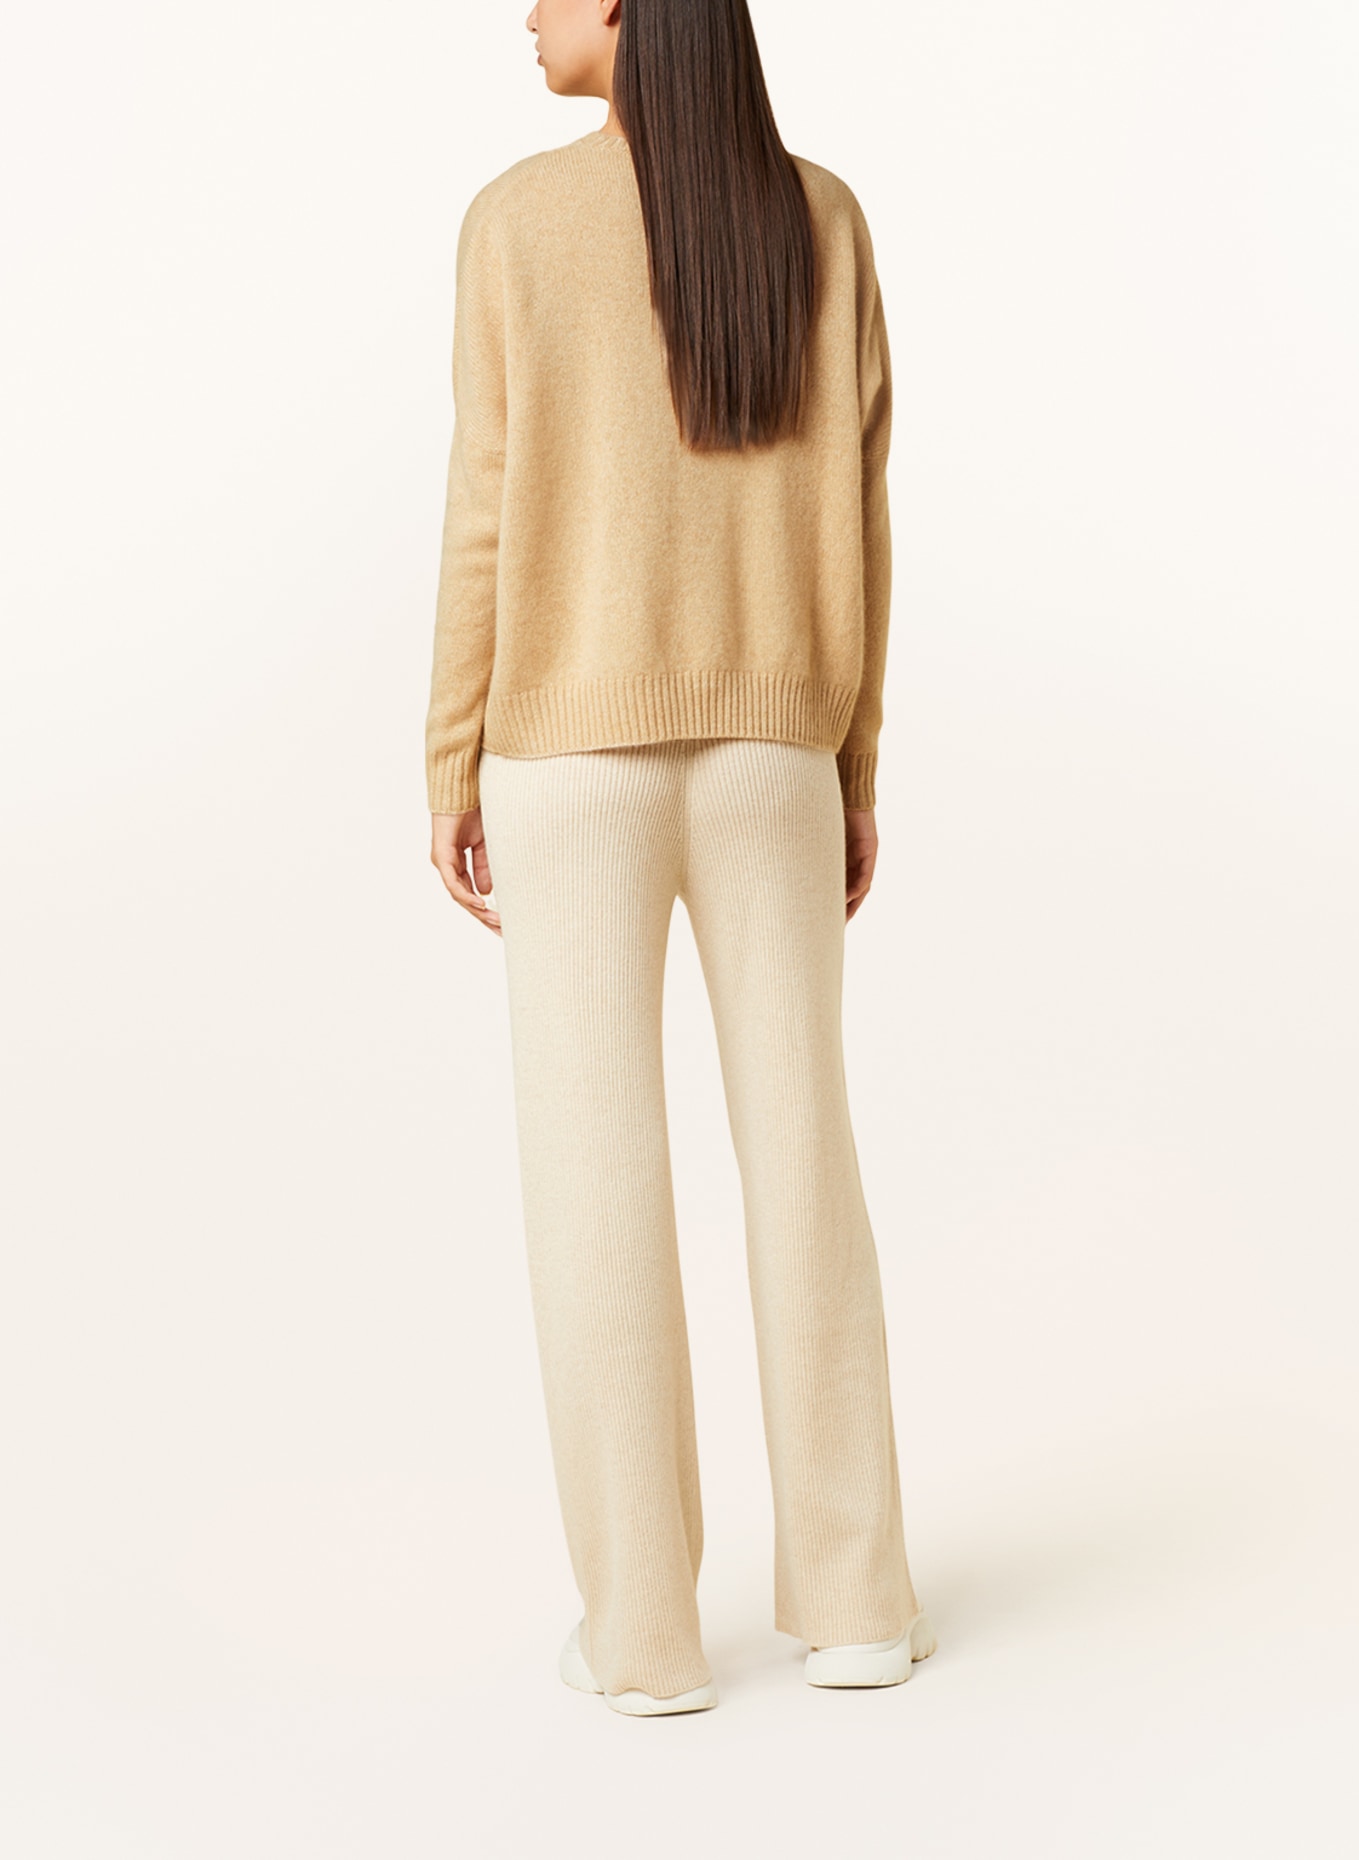 KUJTEN Cashmere sweater AMELIE, Color: BEIGE (Image 3)